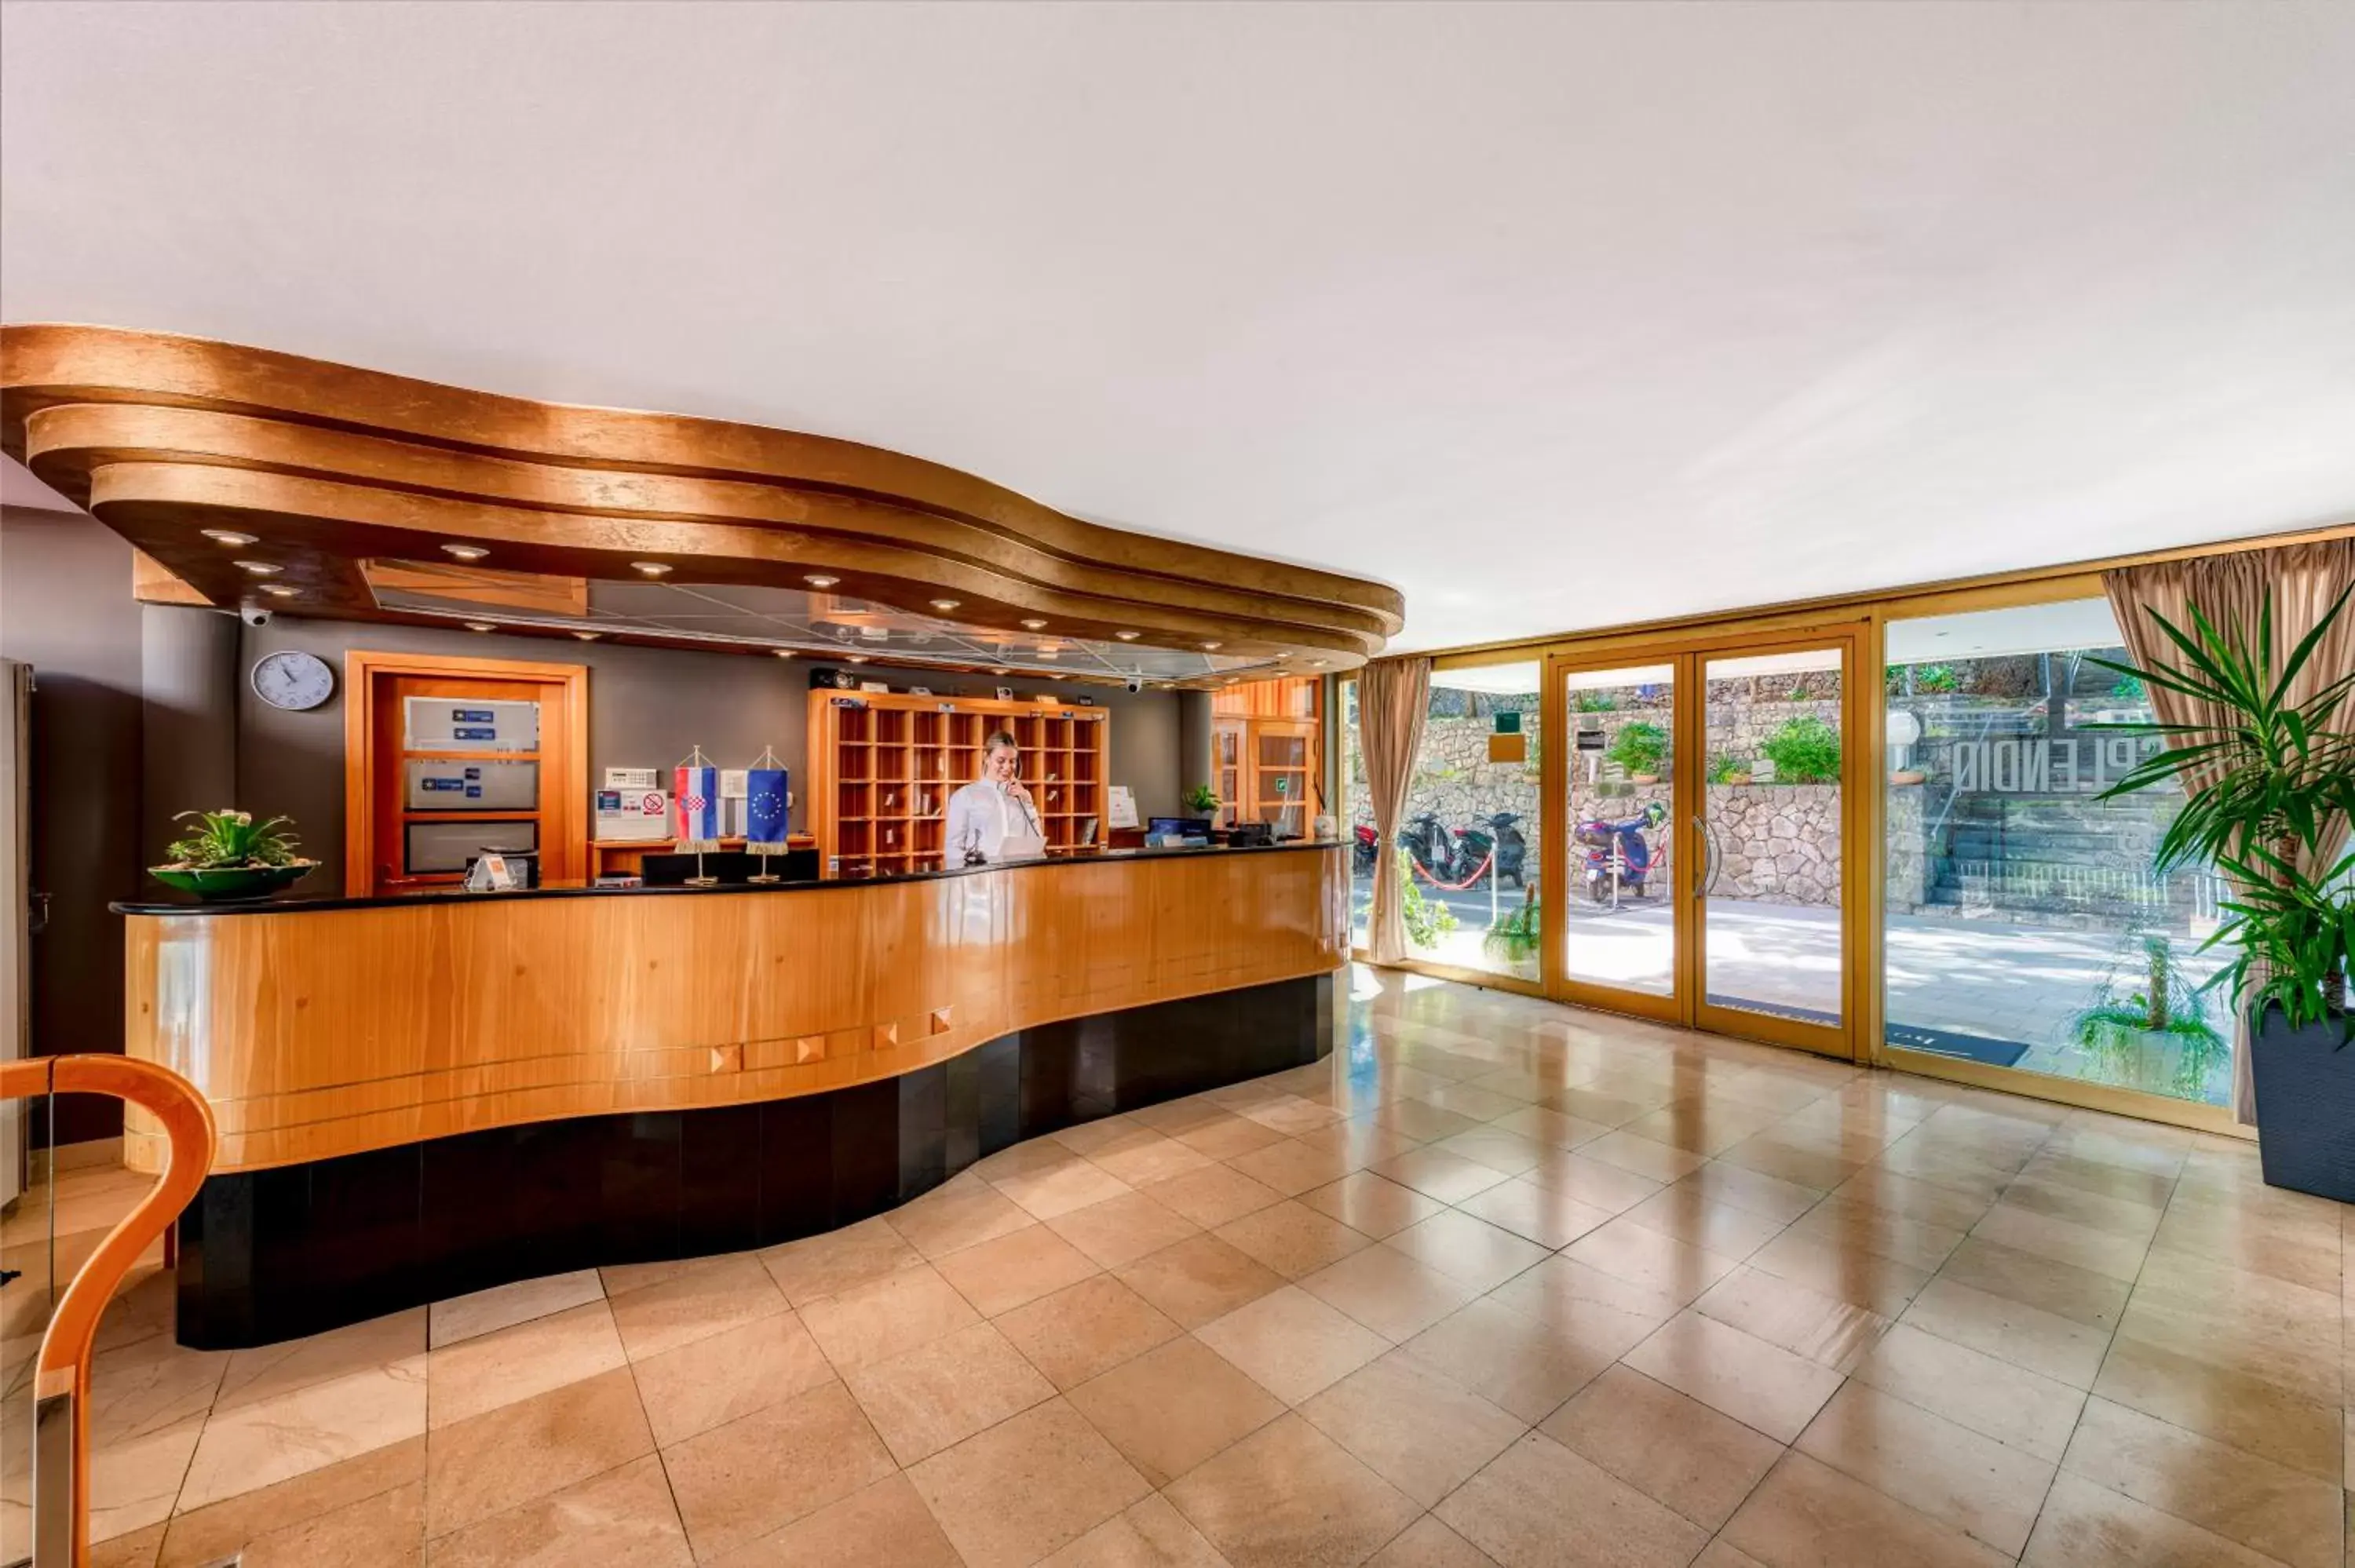 Lobby or reception, Lobby/Reception in Hotel Splendid